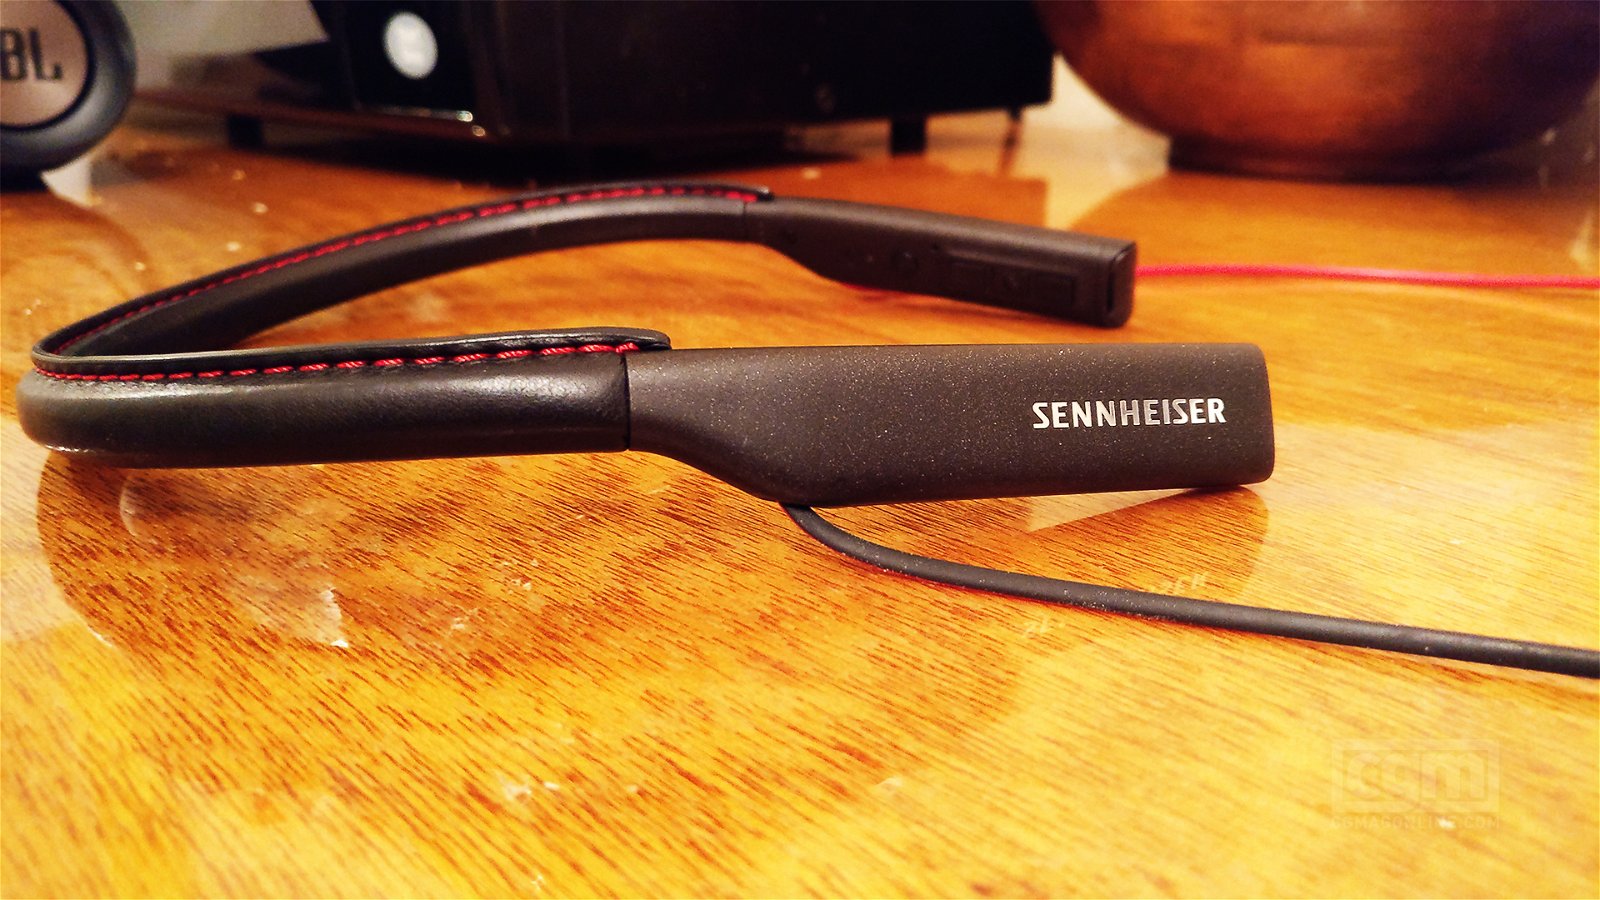 Sennheiser Hd1 In-Ear Bluetooth Headphones Review: Sennheiser Does It Again